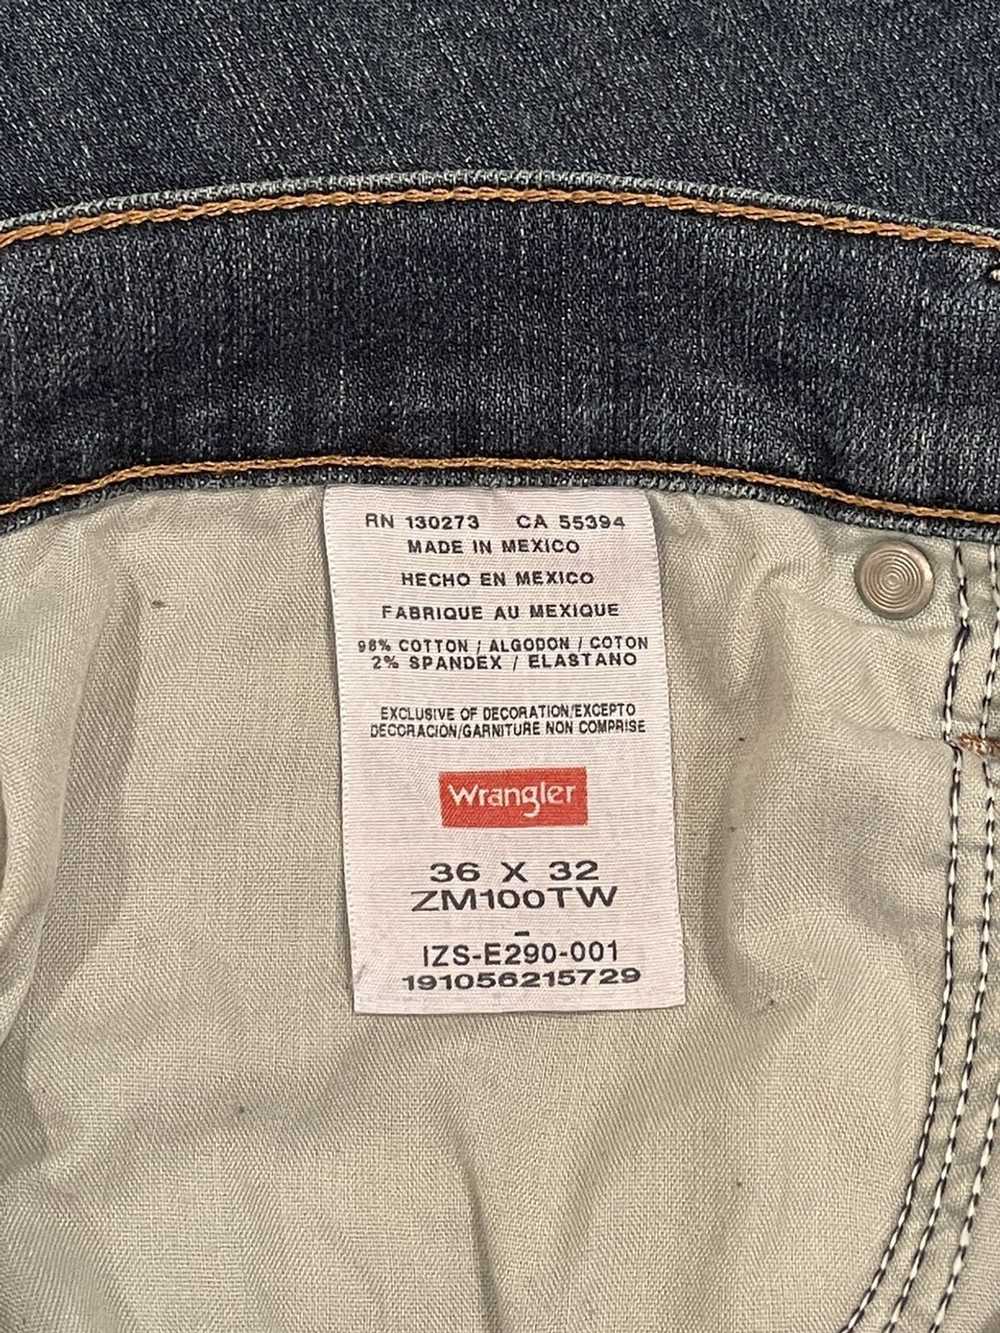 Wrangler Wrangler Jeans W36 x L32 - image 3